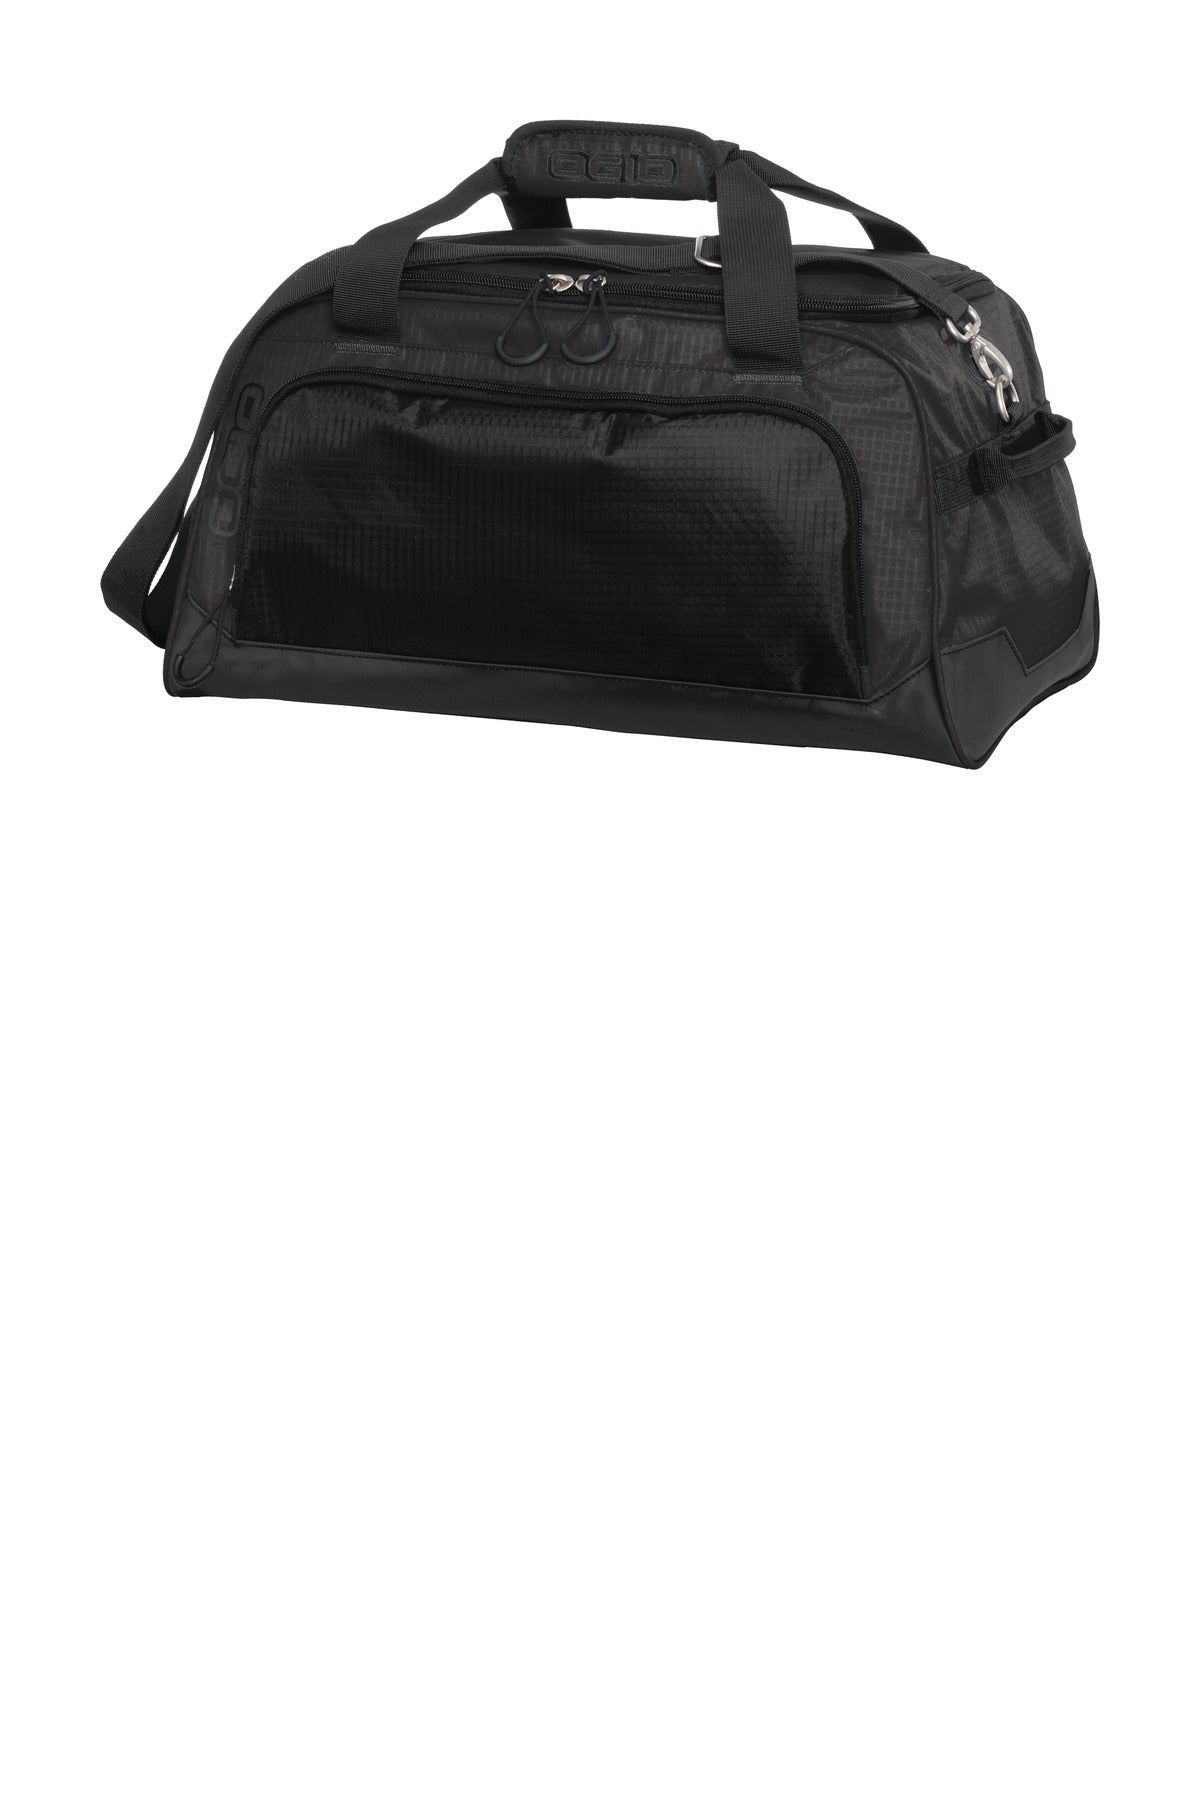 Bags Gear Grey/ Black OSFA OGIO